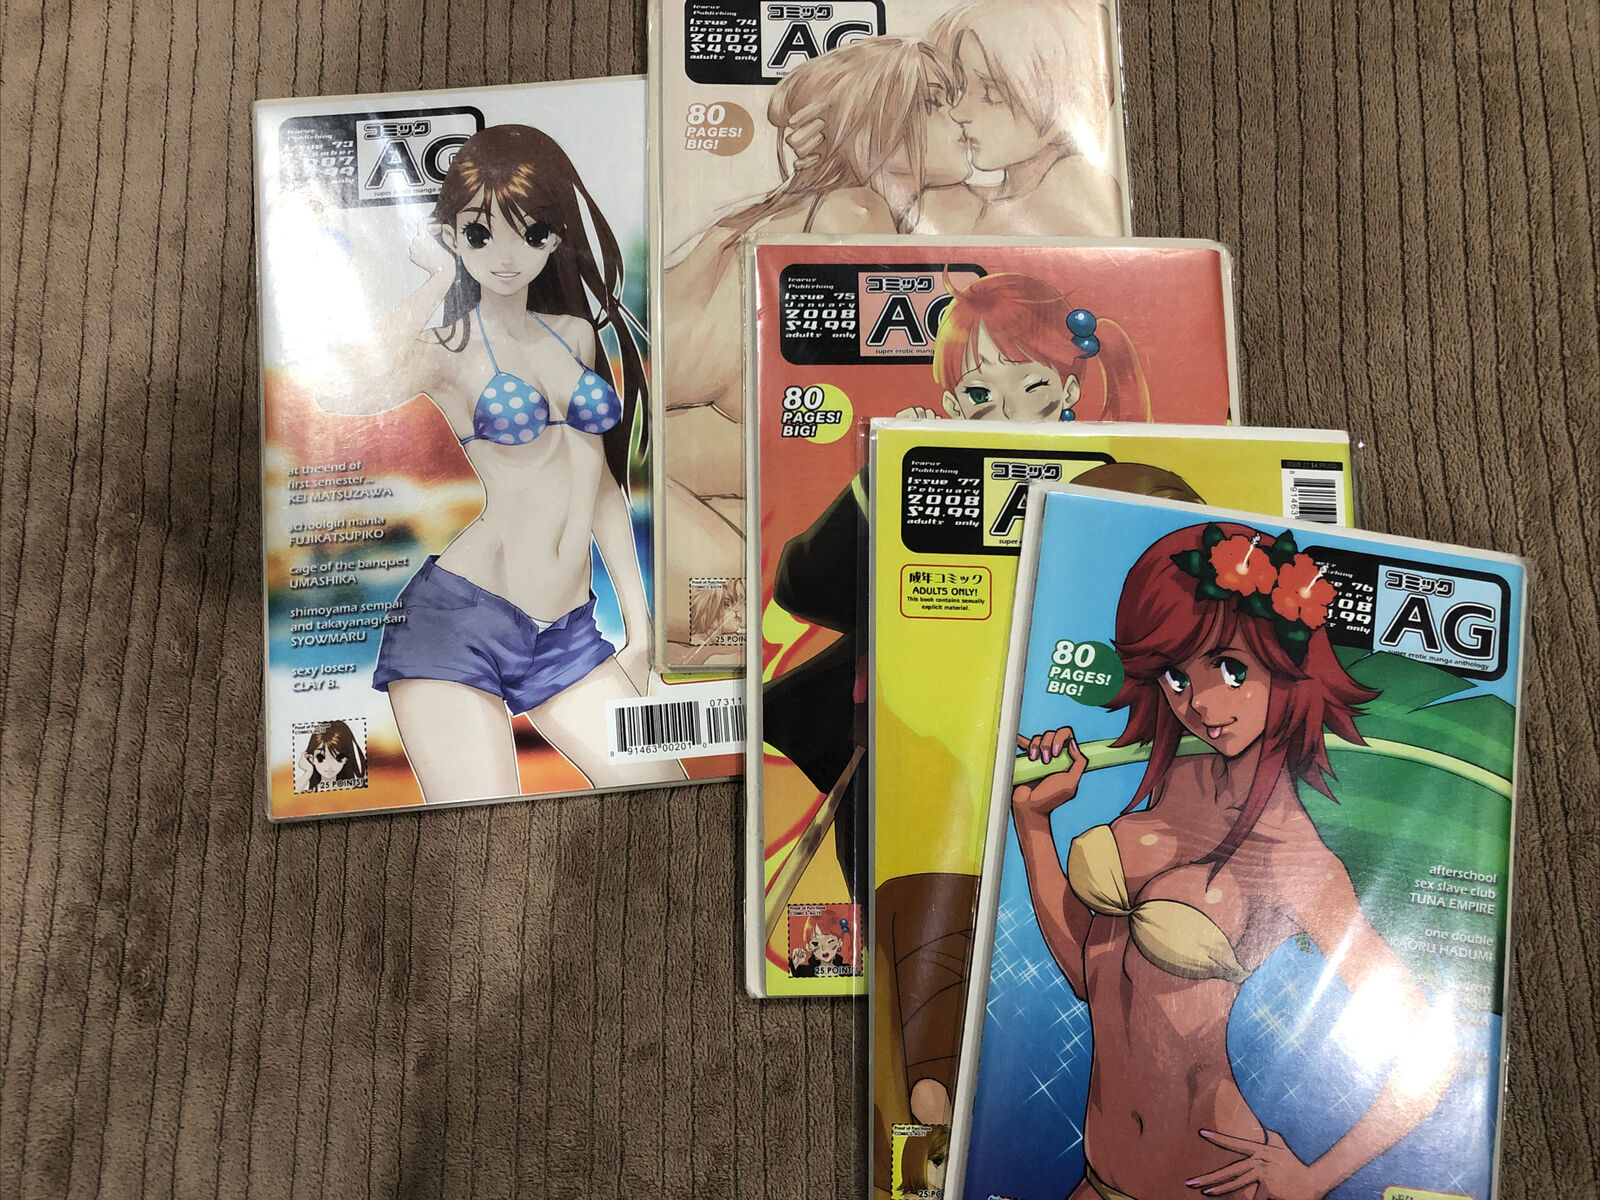 AG: Super Erotic Manga Anthology Lot #73, 74, 75, 76, 77